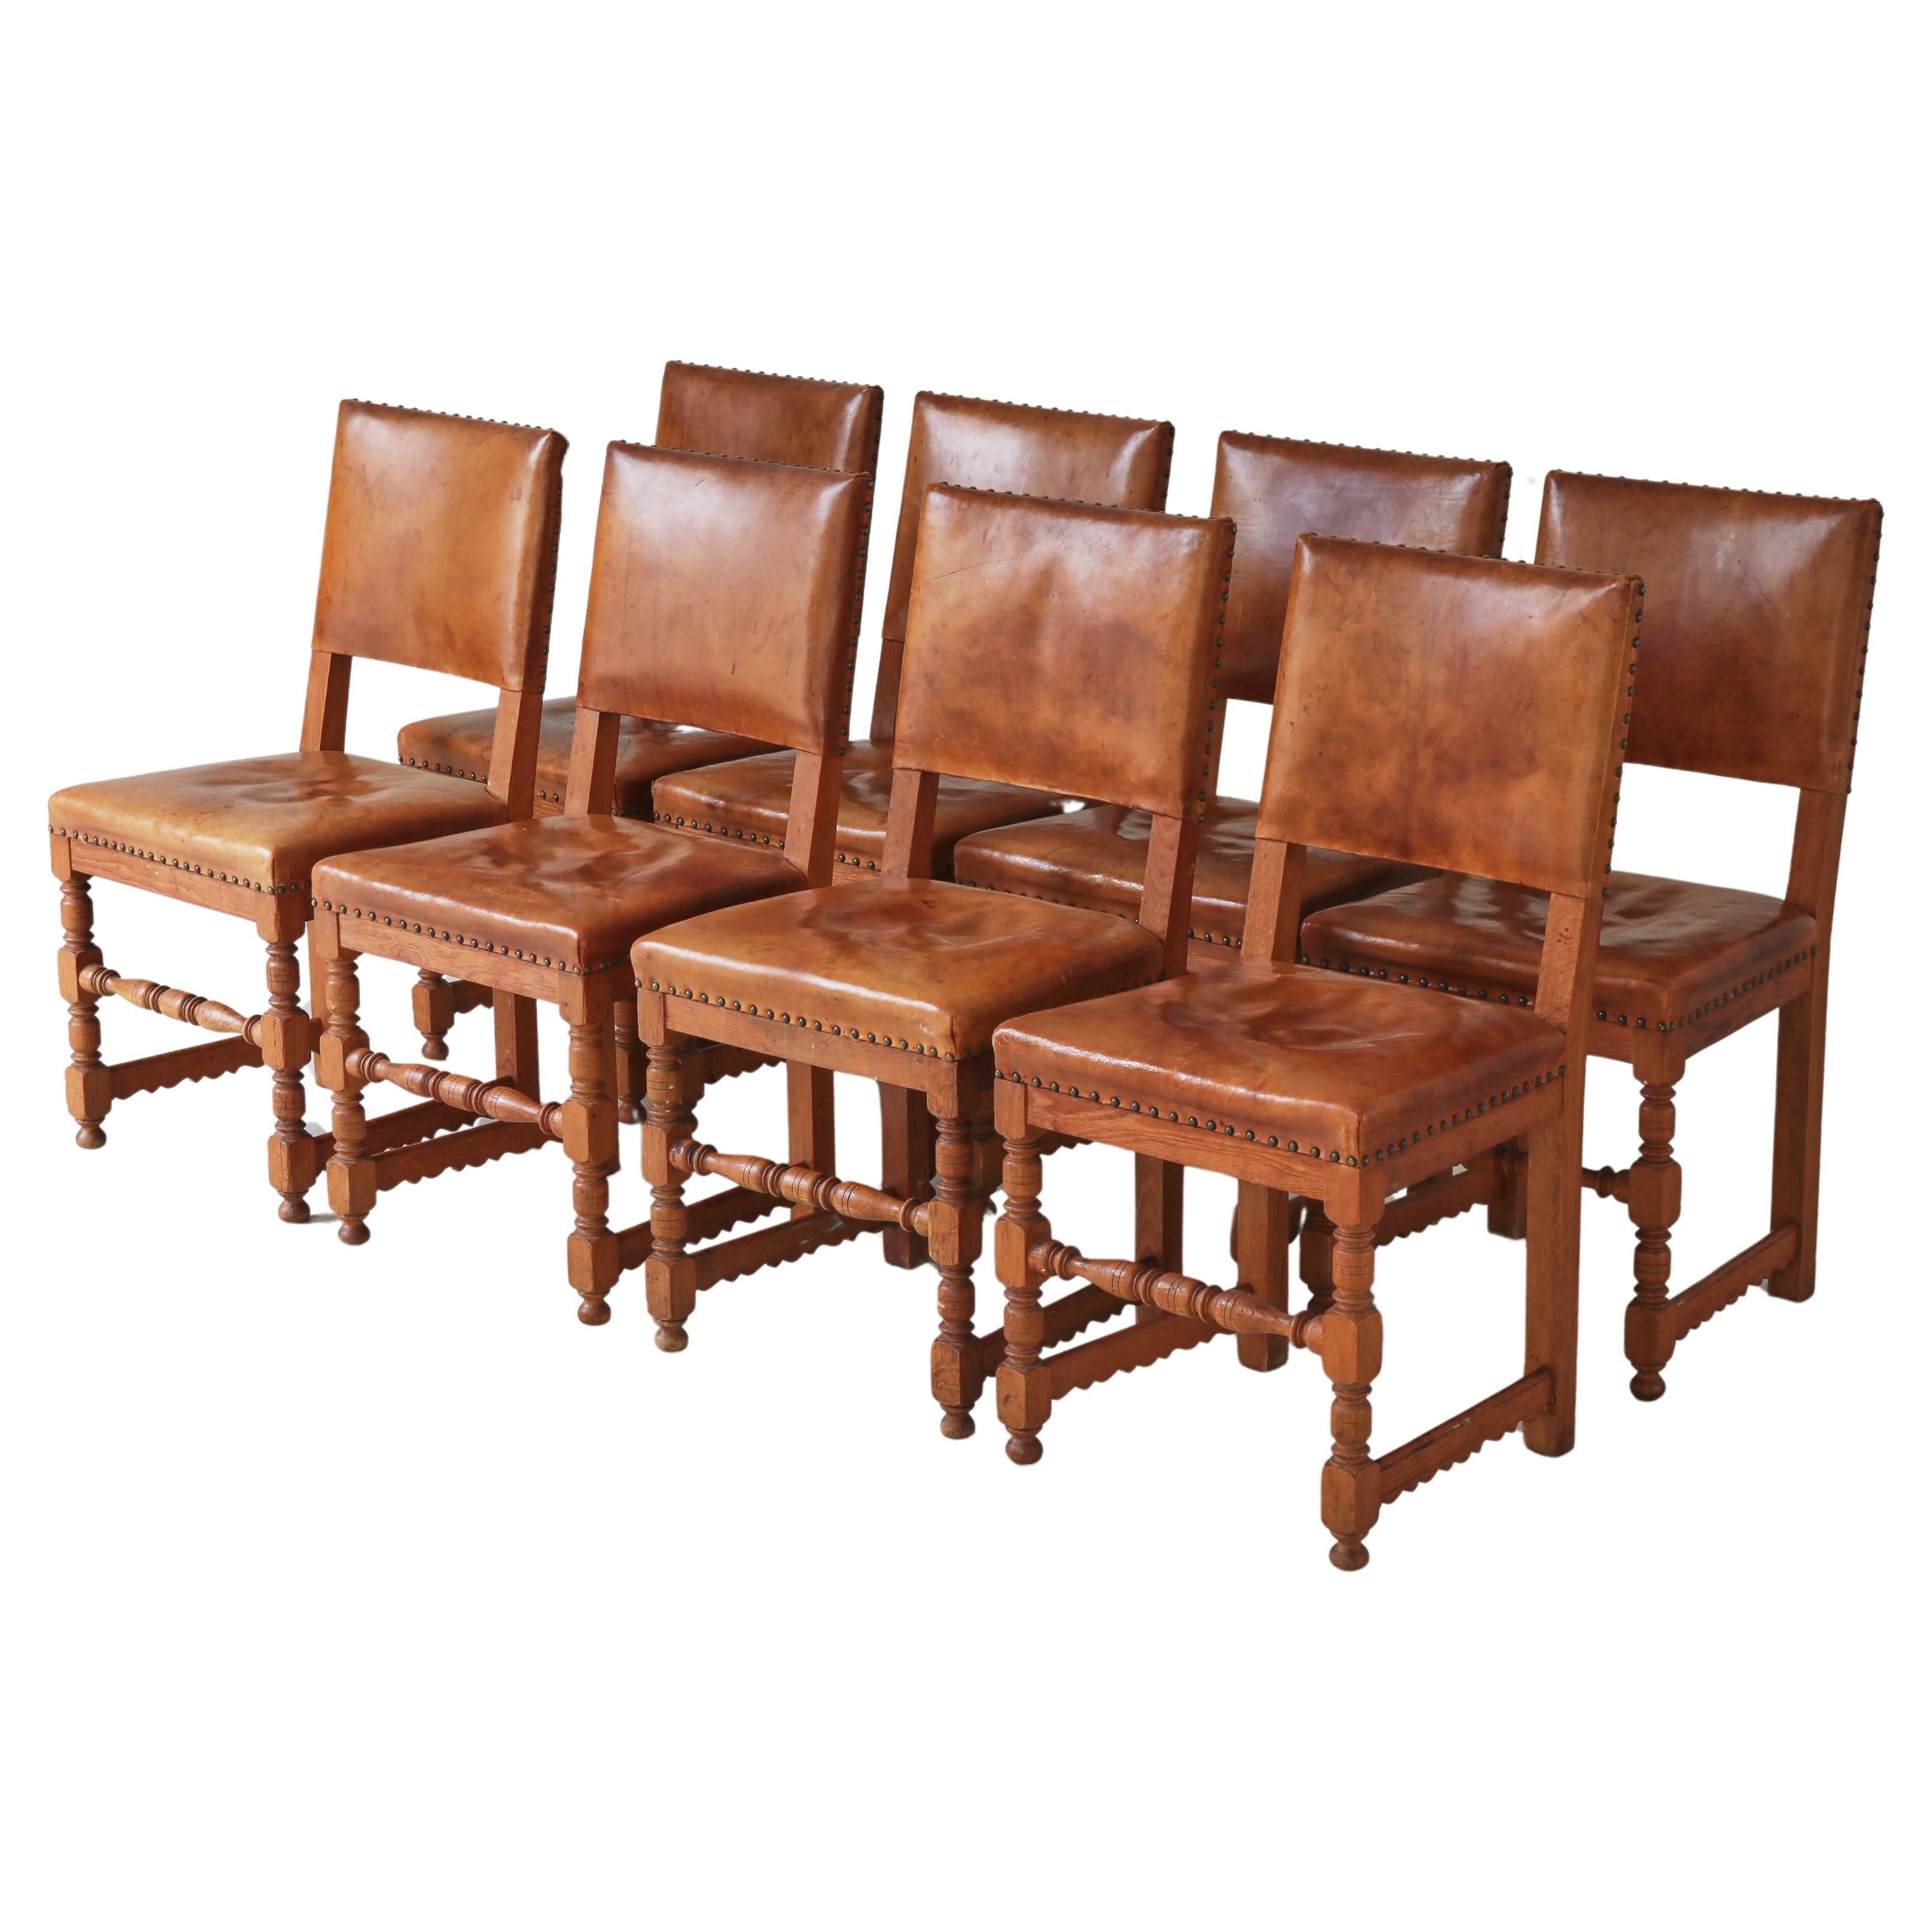 Master Cabinetmaker Lars Møller Dining Chairs in Oak & Leather, Denmark, 1935